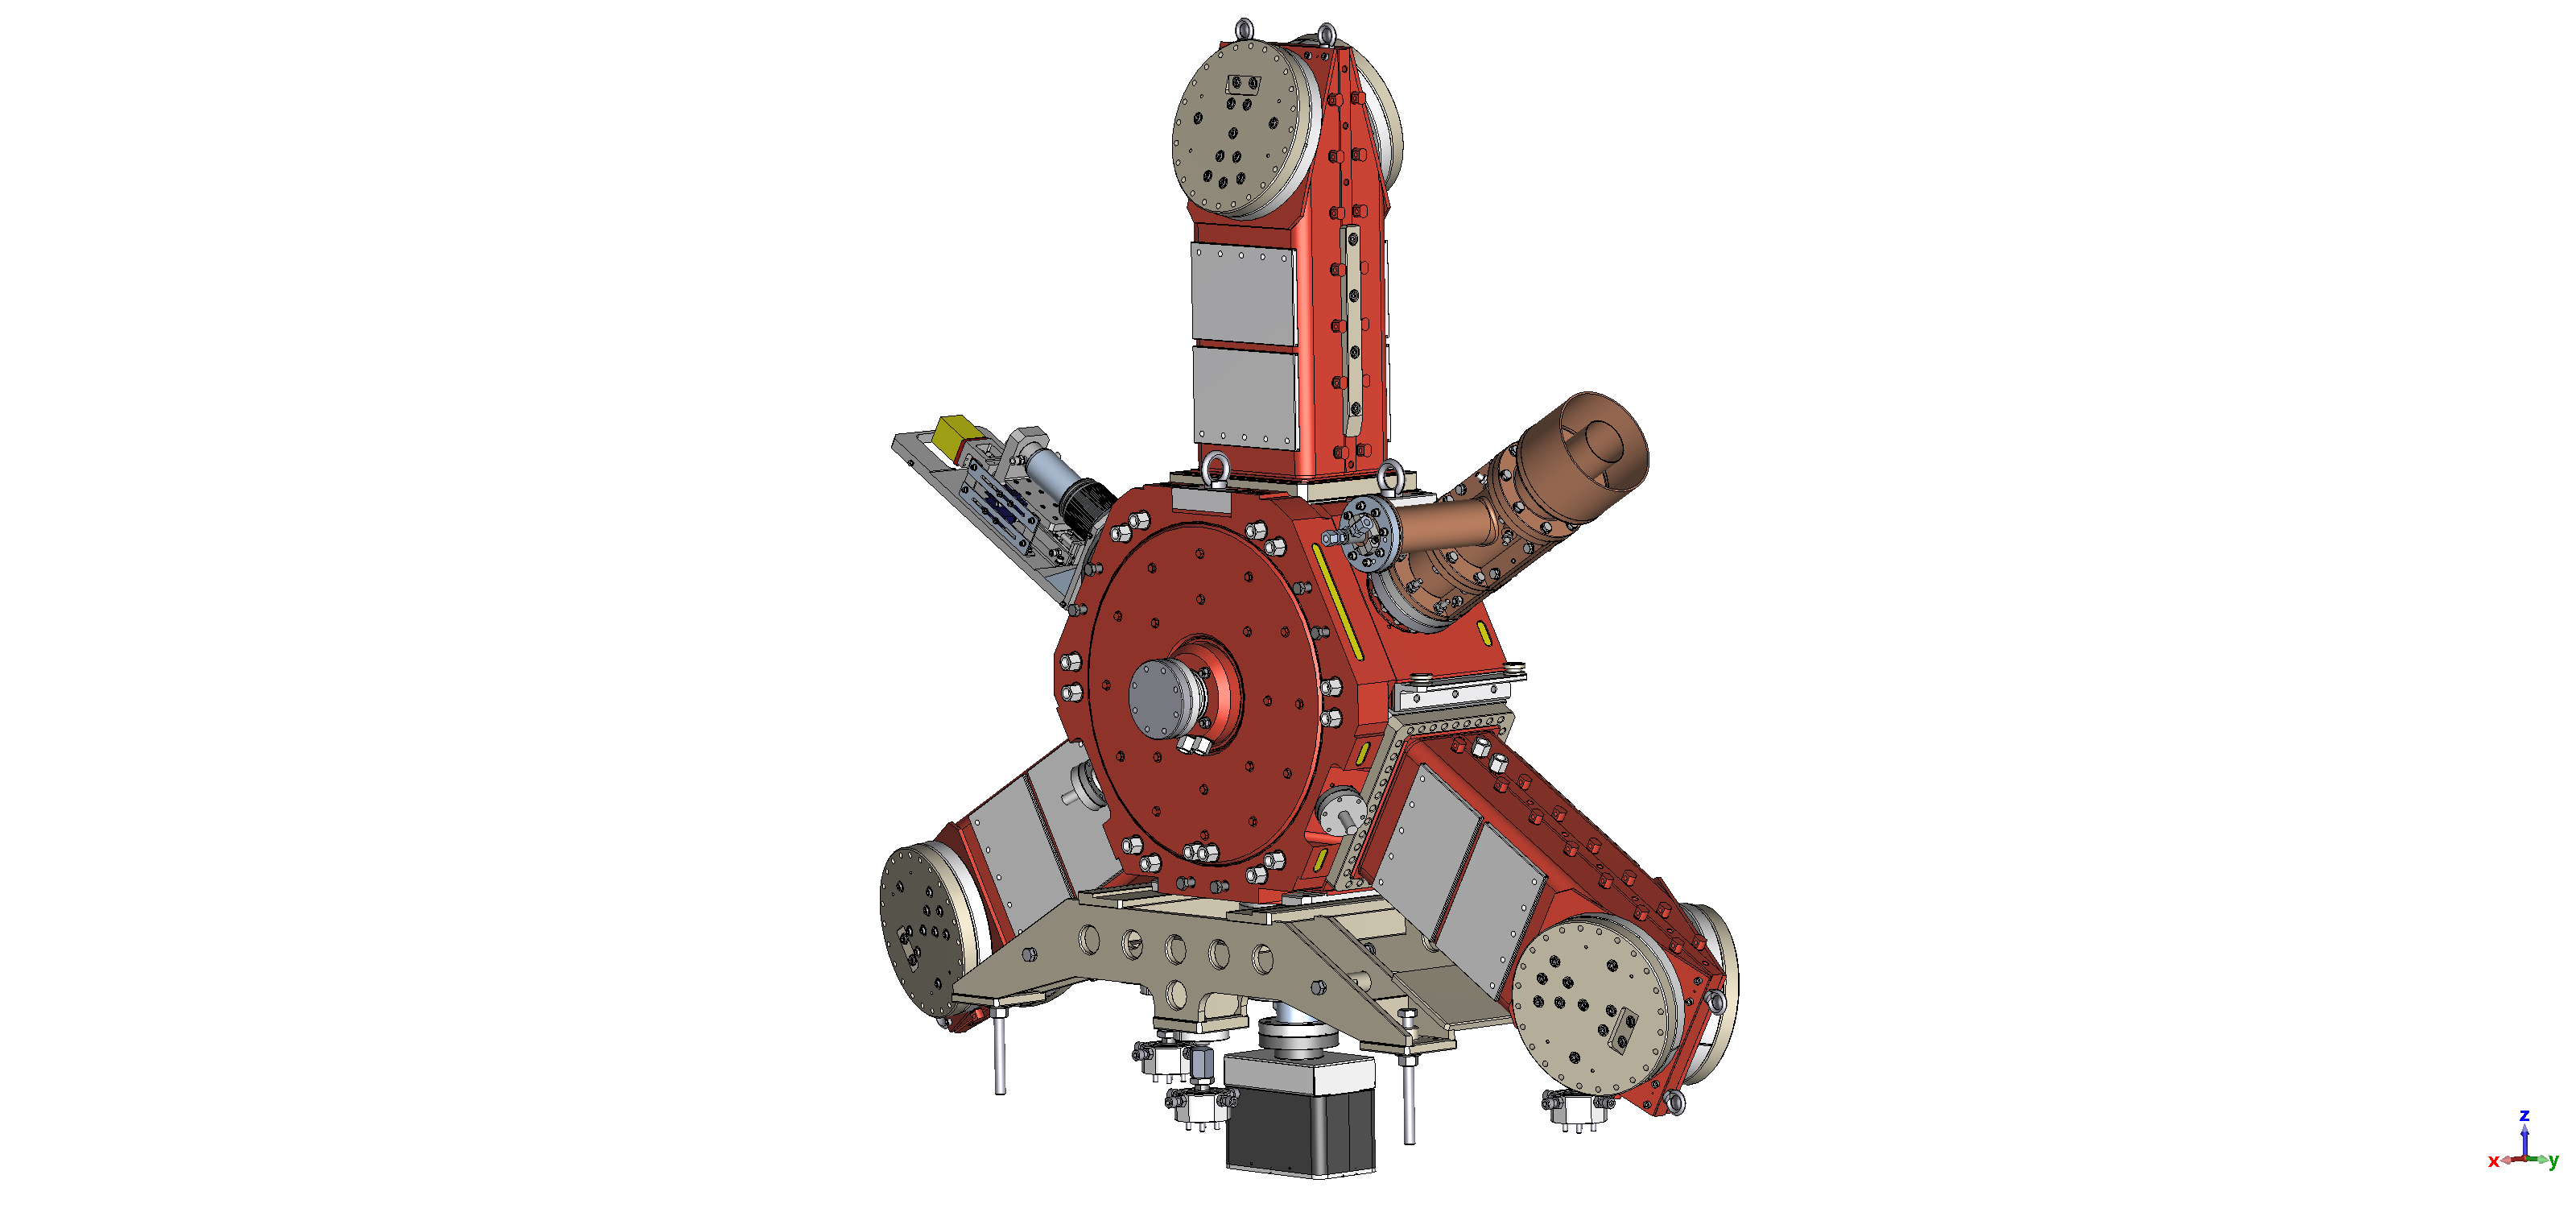 3D модель высокочастотного резонатора разработанного и созданного в ИЯФ СО РАН. Предоставлено Е